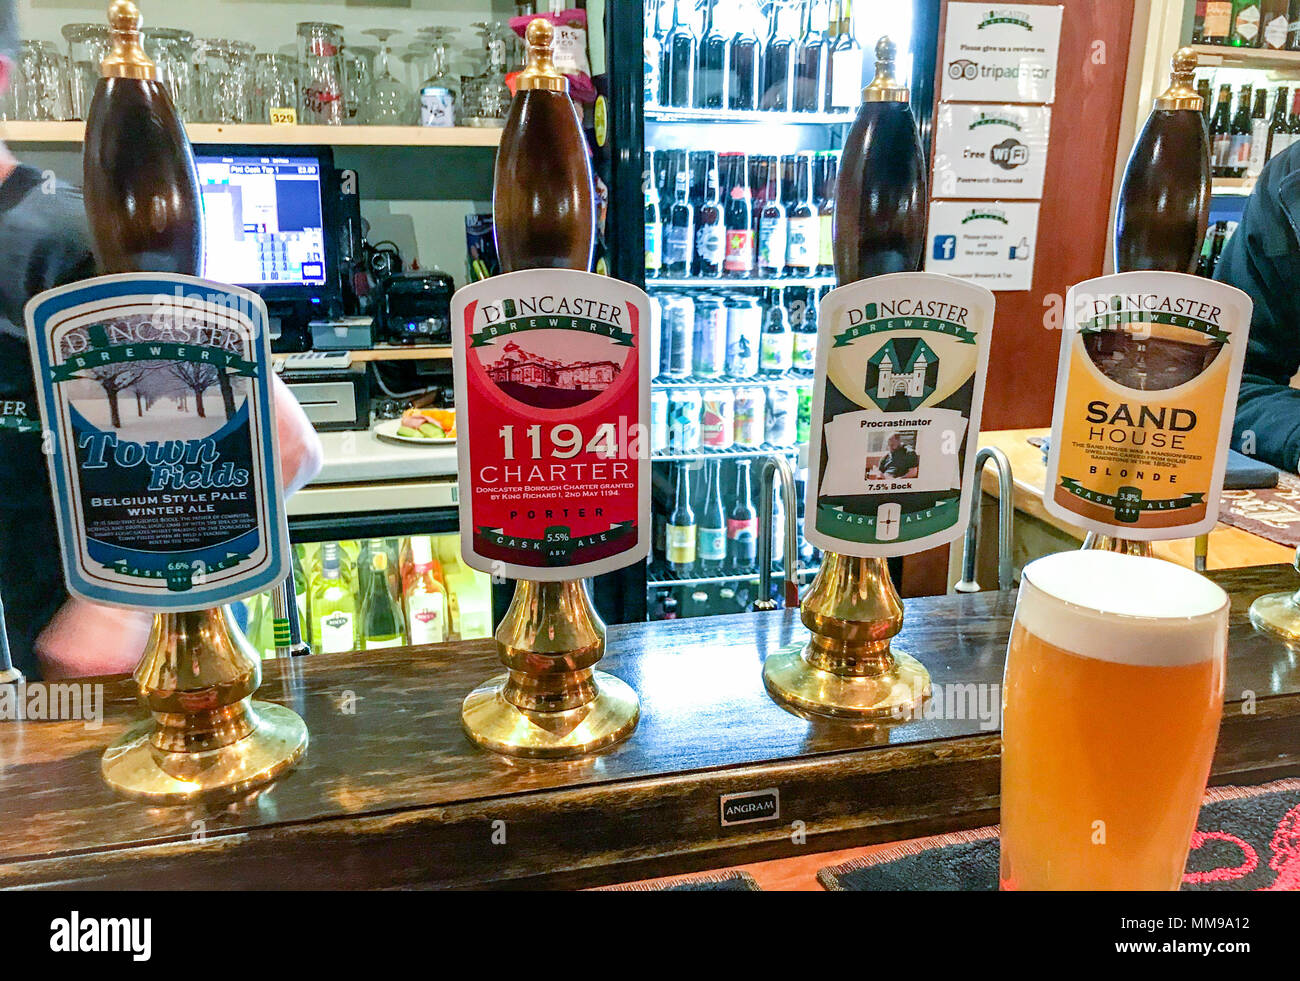 Doncaster Brauerei Bier Pumpen auf eine Bar, in einem traditionellen englischen Pub, South Yorkshire, England, Großbritannien Stockfoto